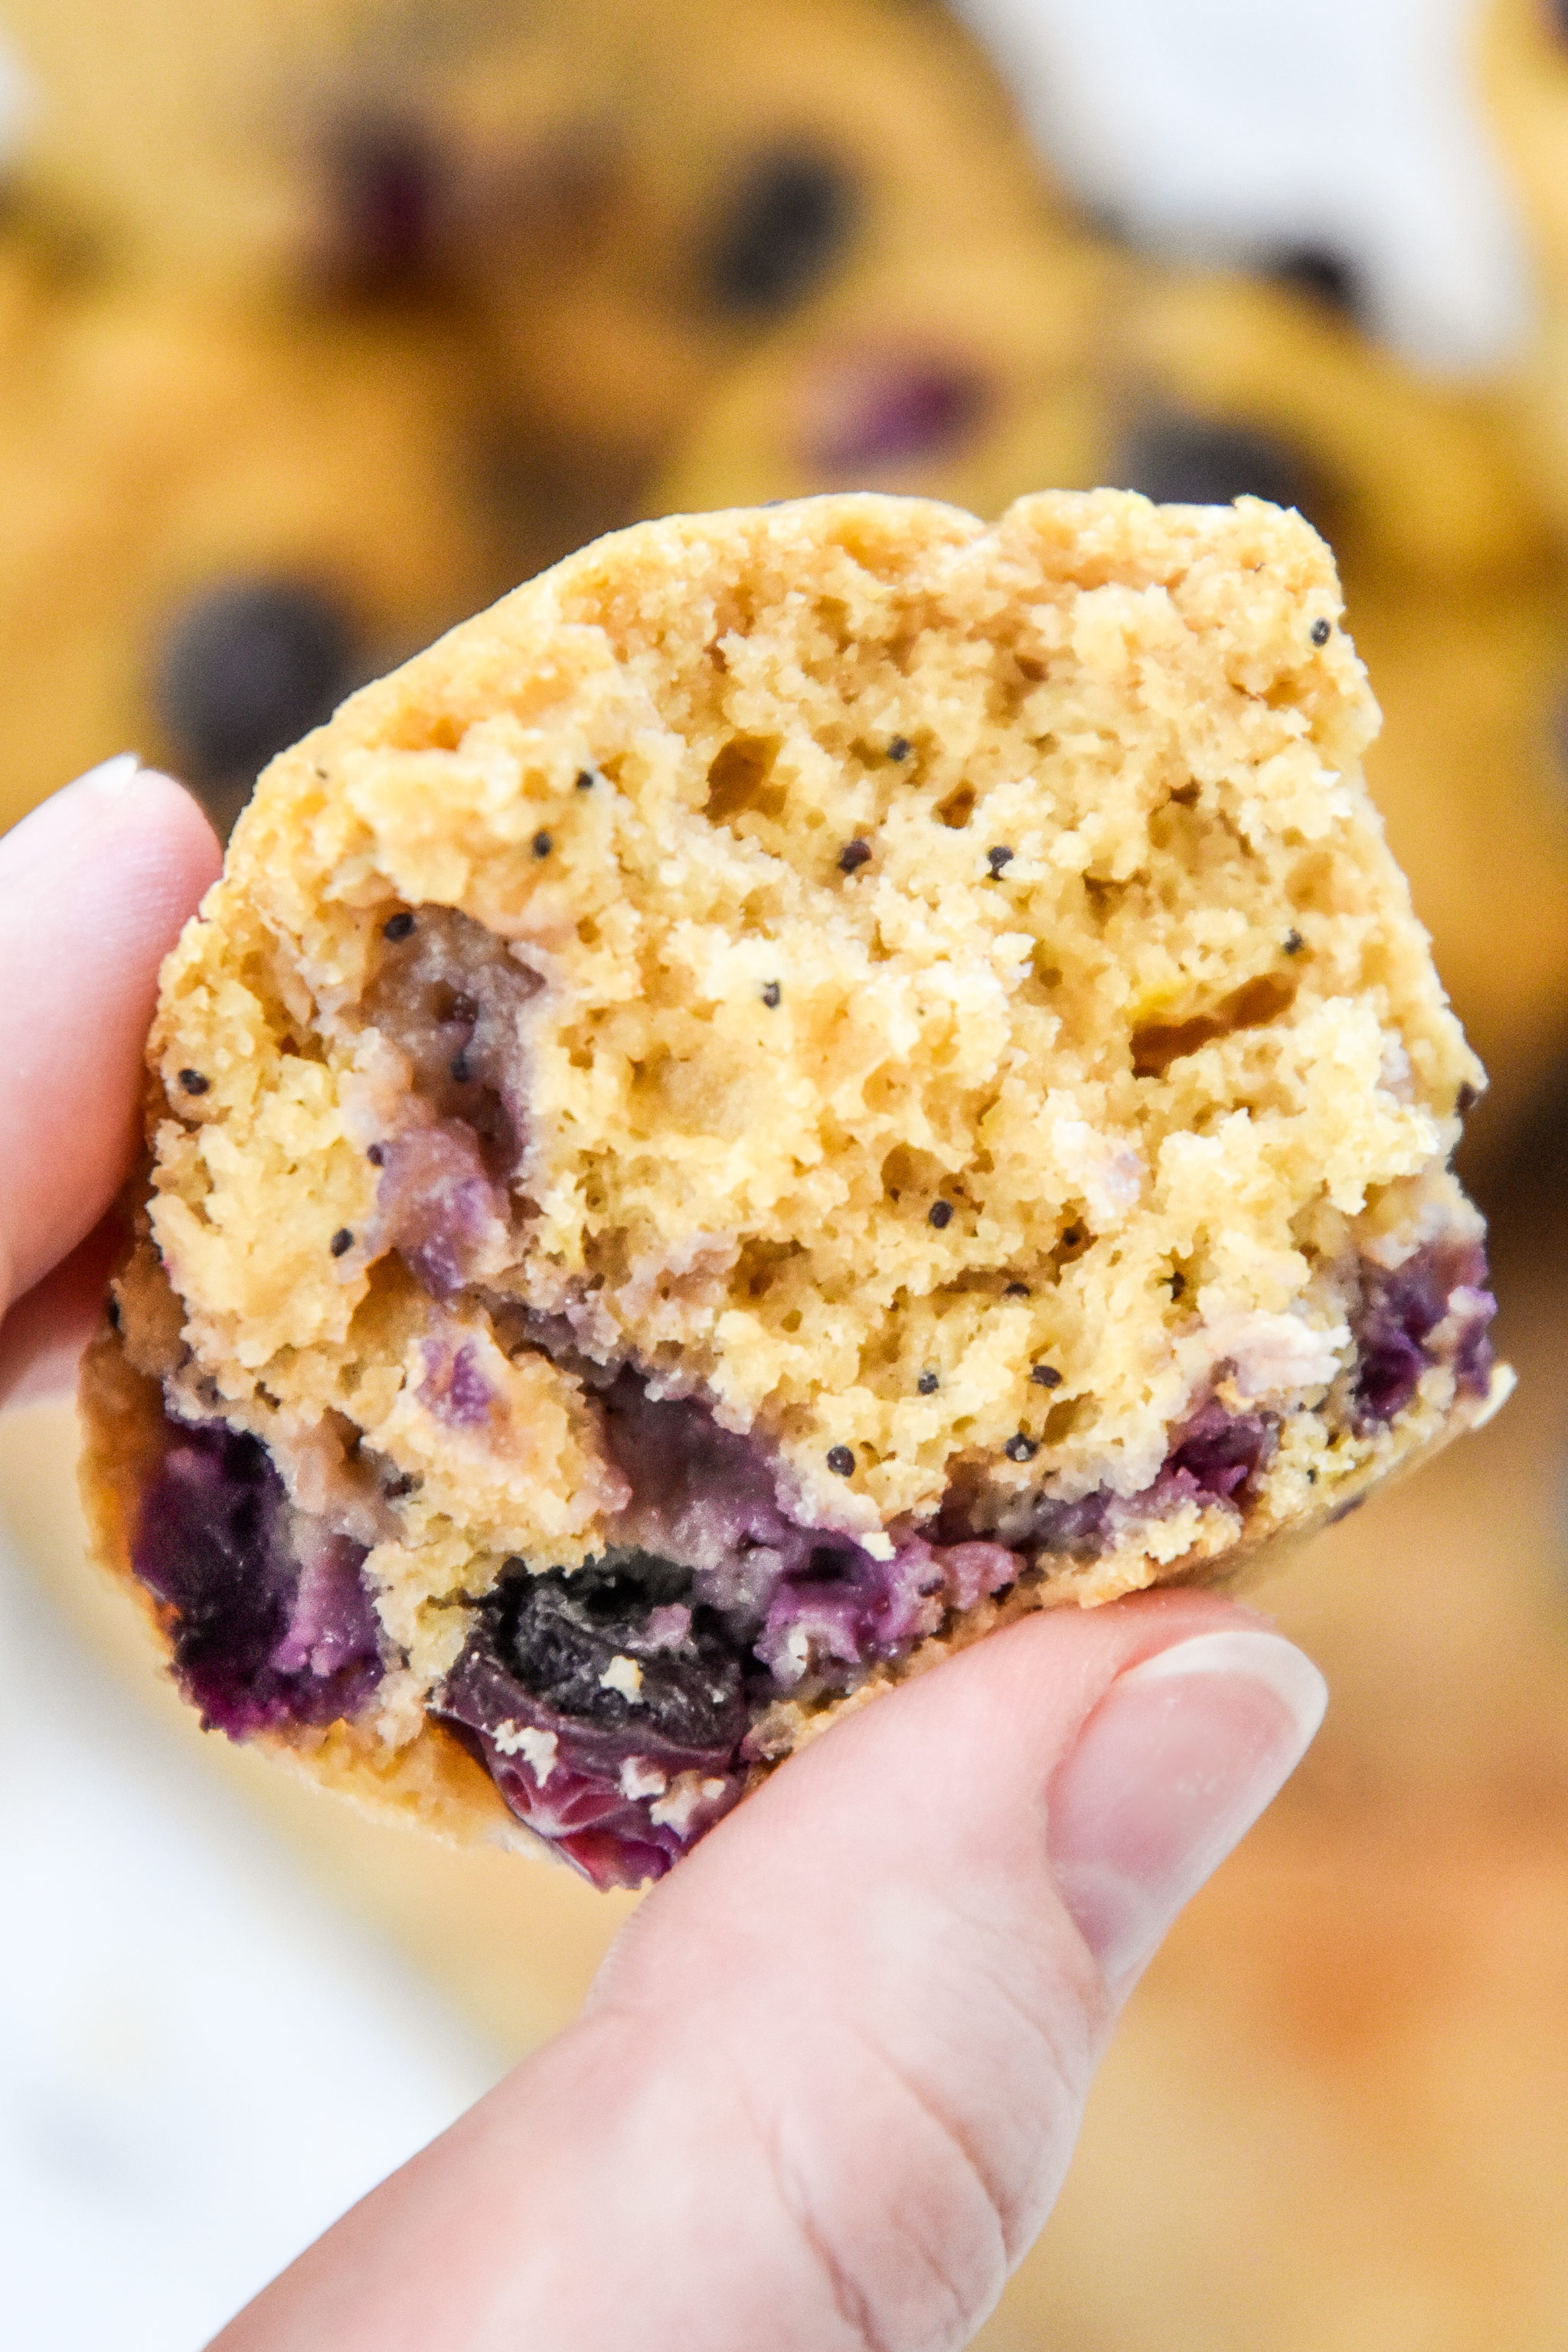 inside of a blueberry lemon pancake mix muffin.